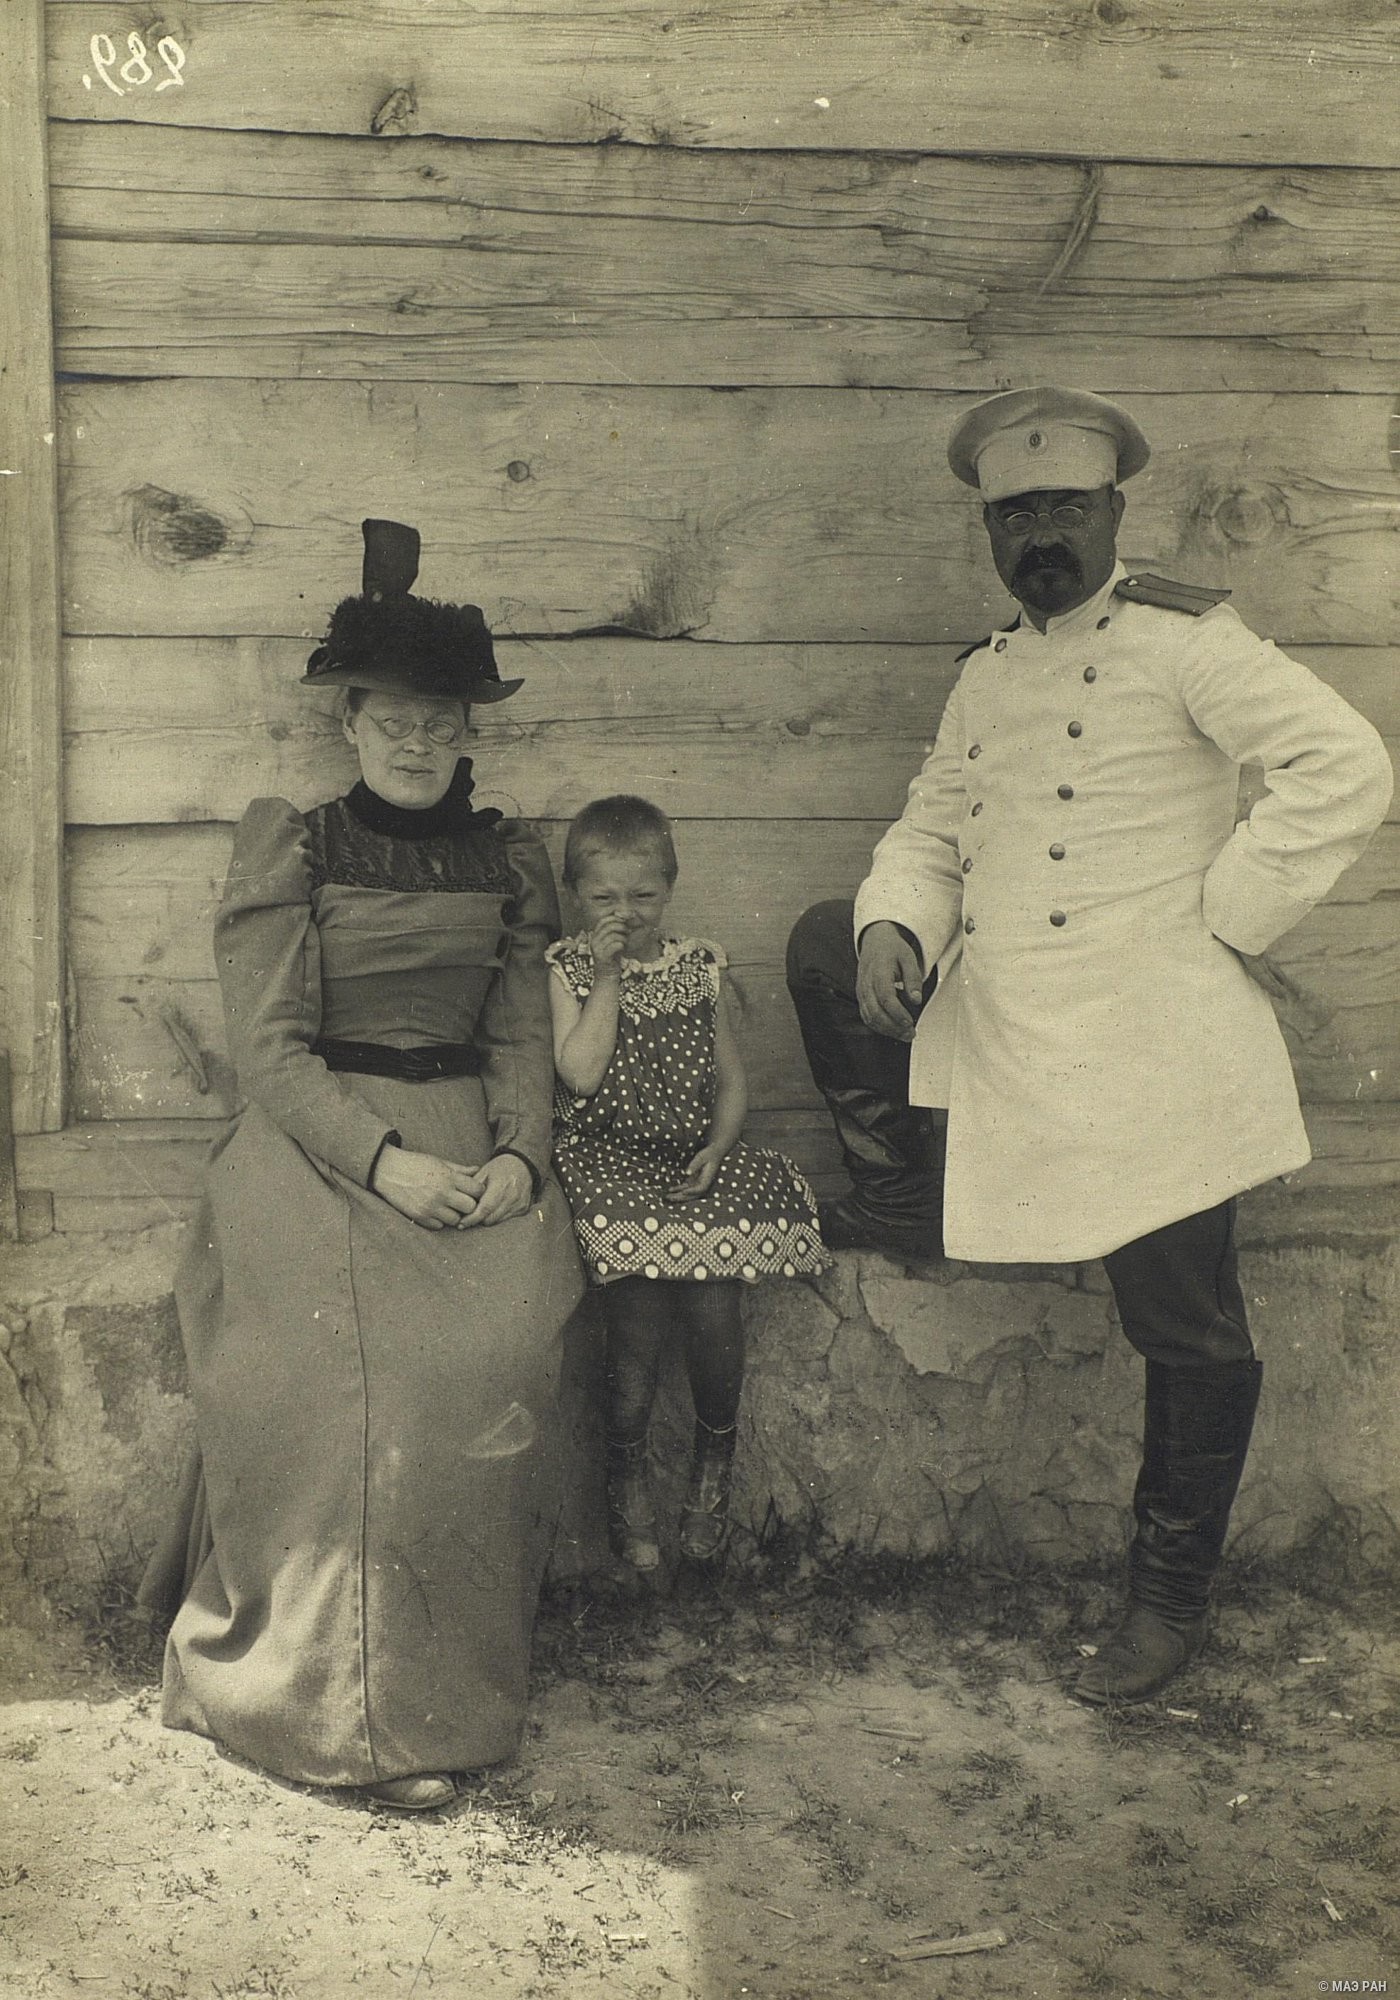 Исправник с семьёй. Русские, Казахстан, 1899. Автор С. М. Дудин